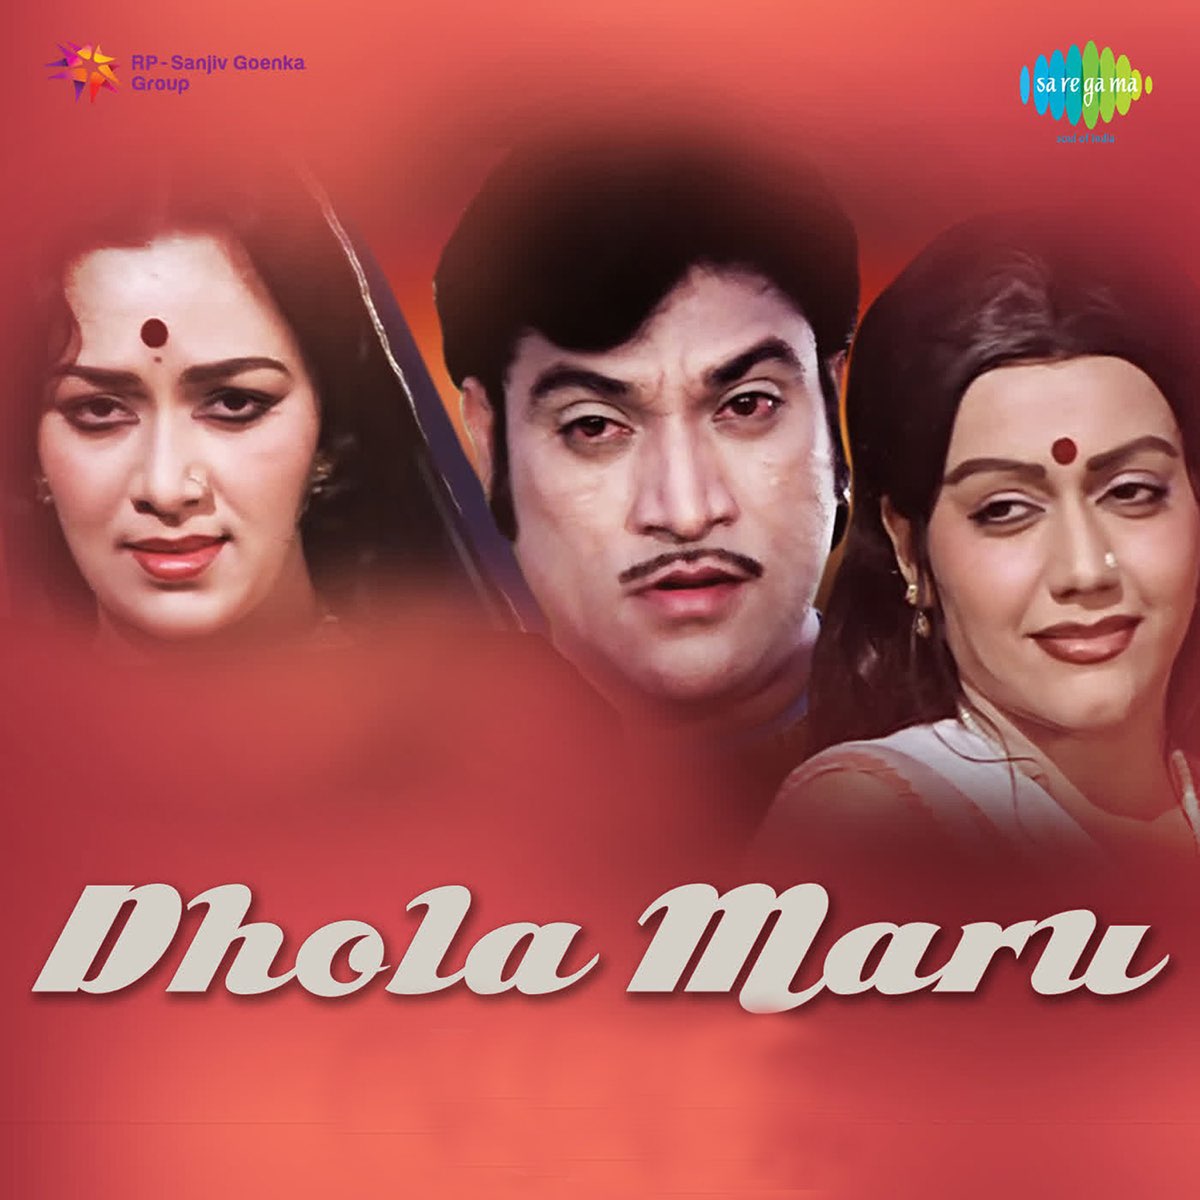 Dhola maru song